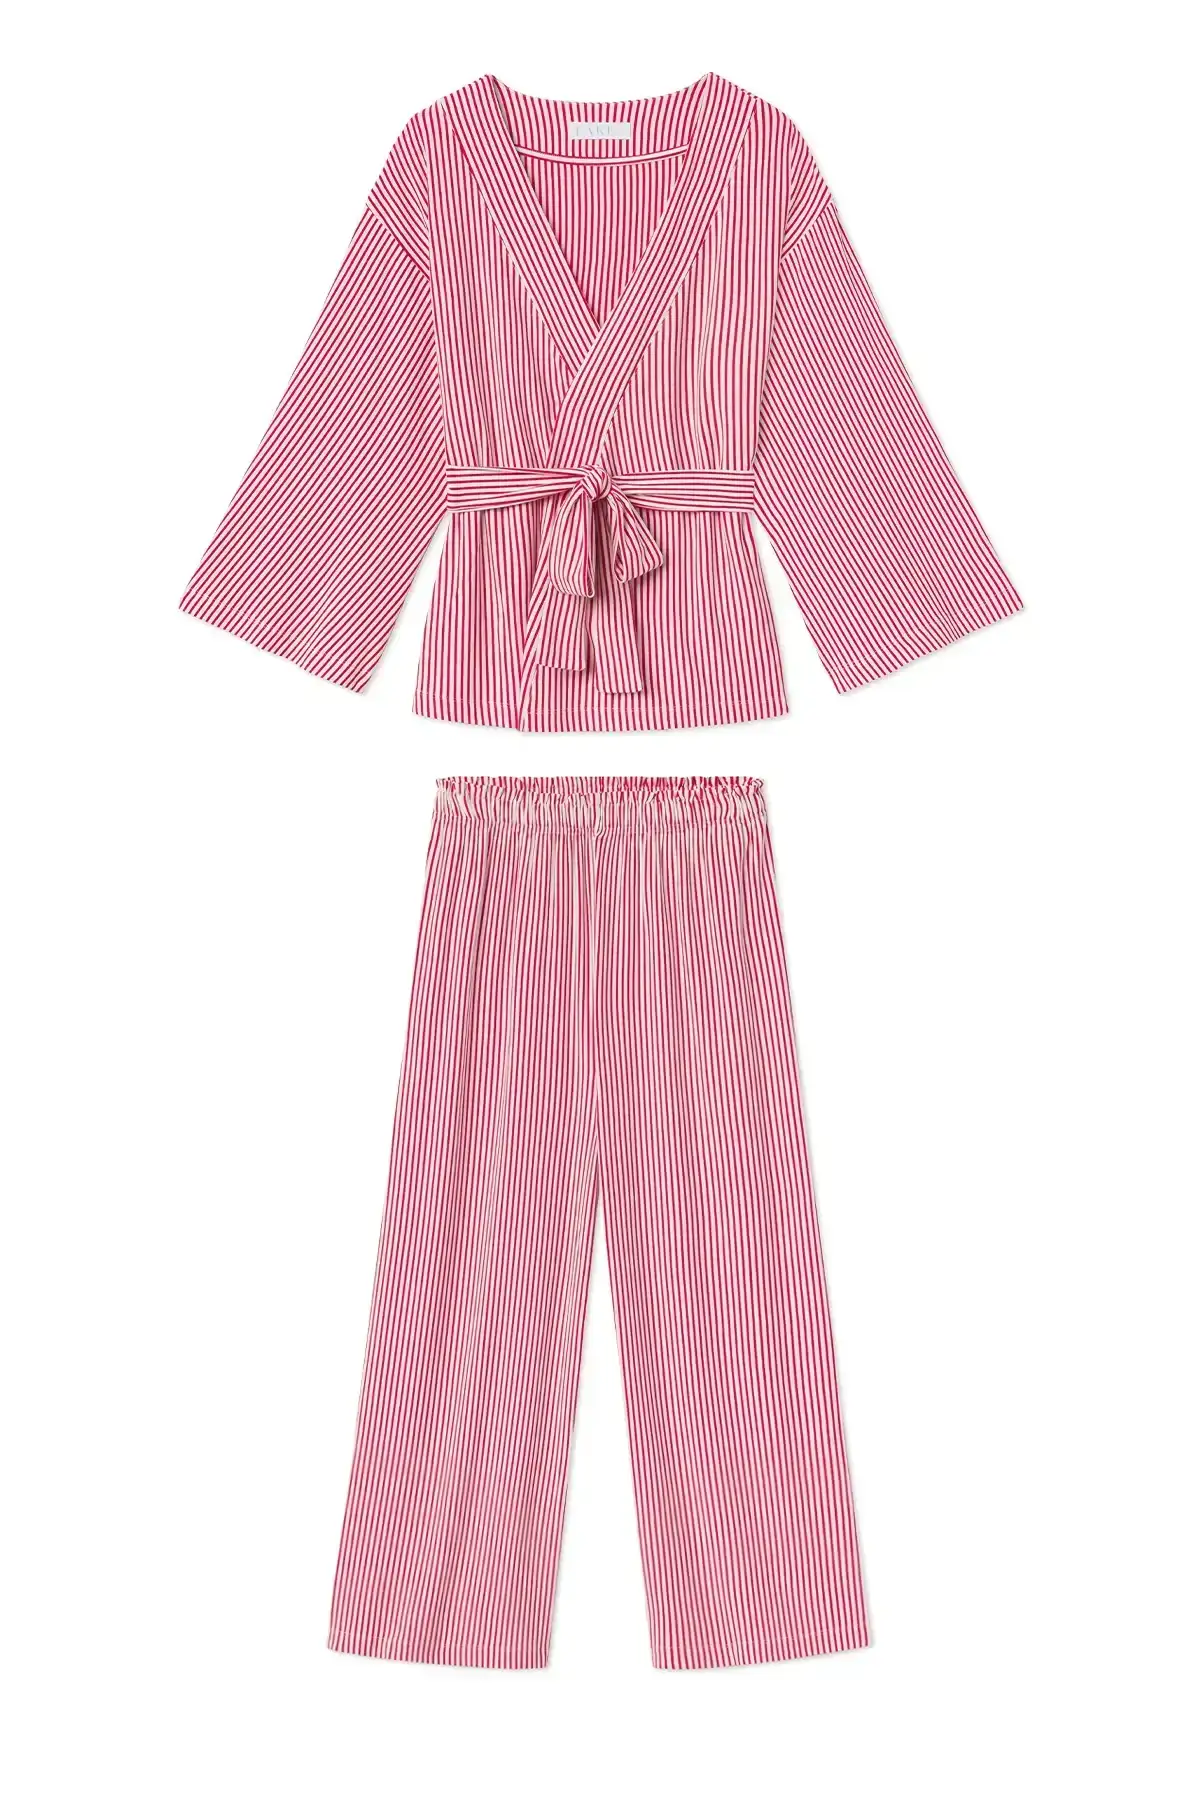 Image of DreamKnit Kimono Pajama Set in Red Stripe